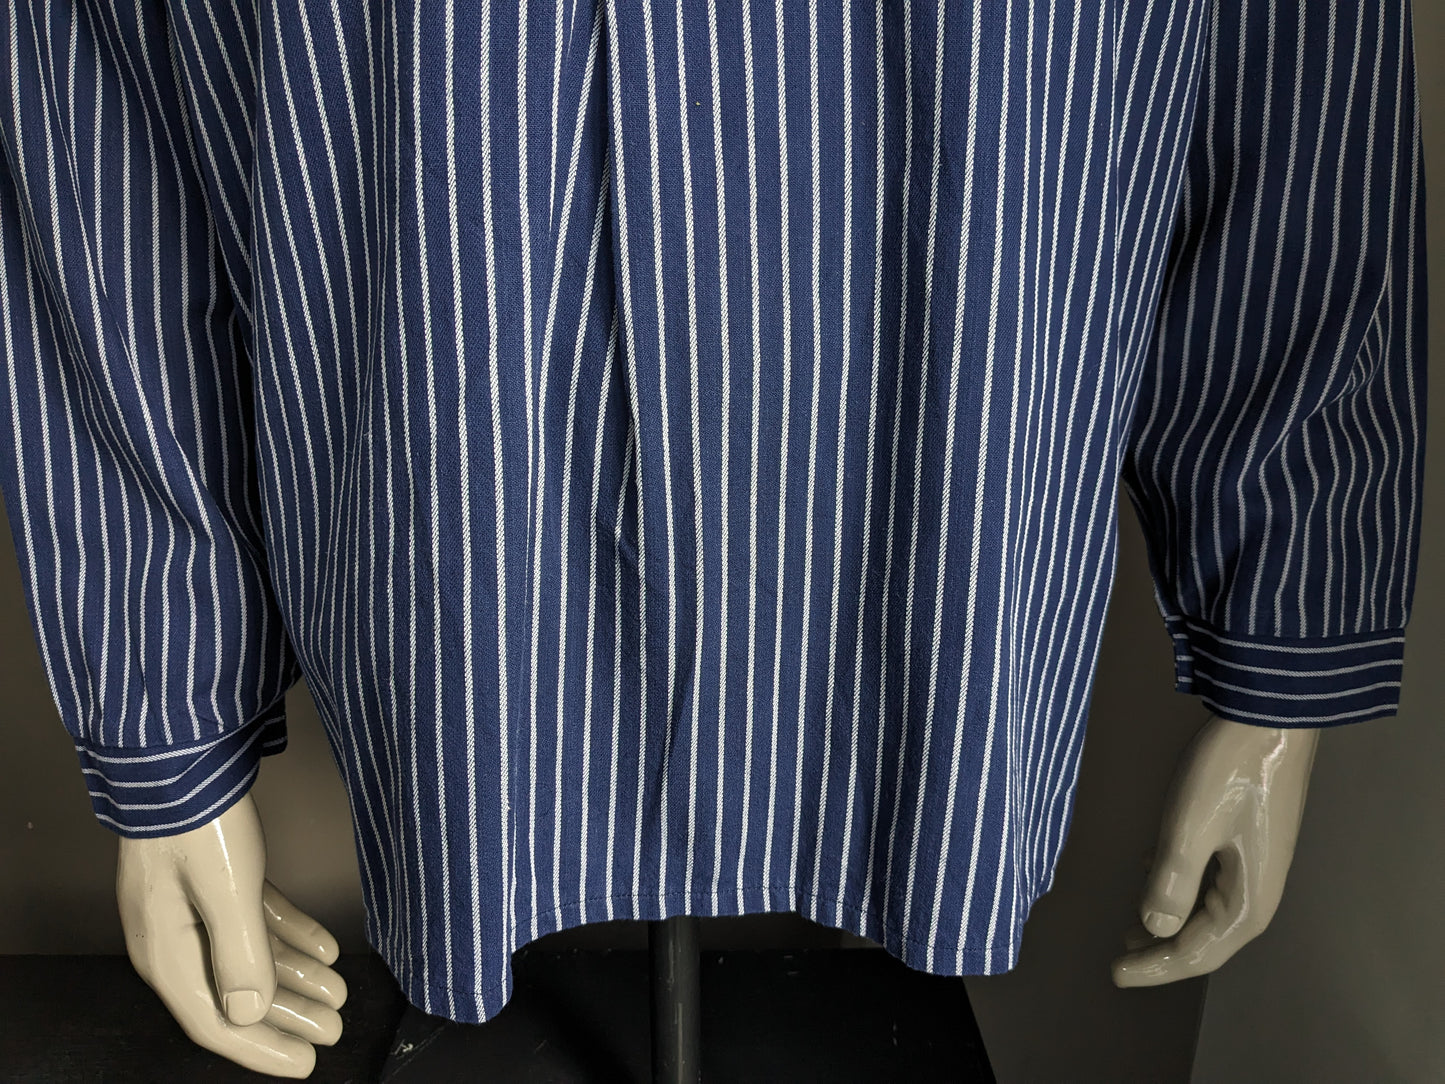 Suéter / camisa Vintage Modas Polo. PARACIÓN / AGRICULTERS / COLLAR DE MAO. Blanco azul rayado. Tamaño xl.